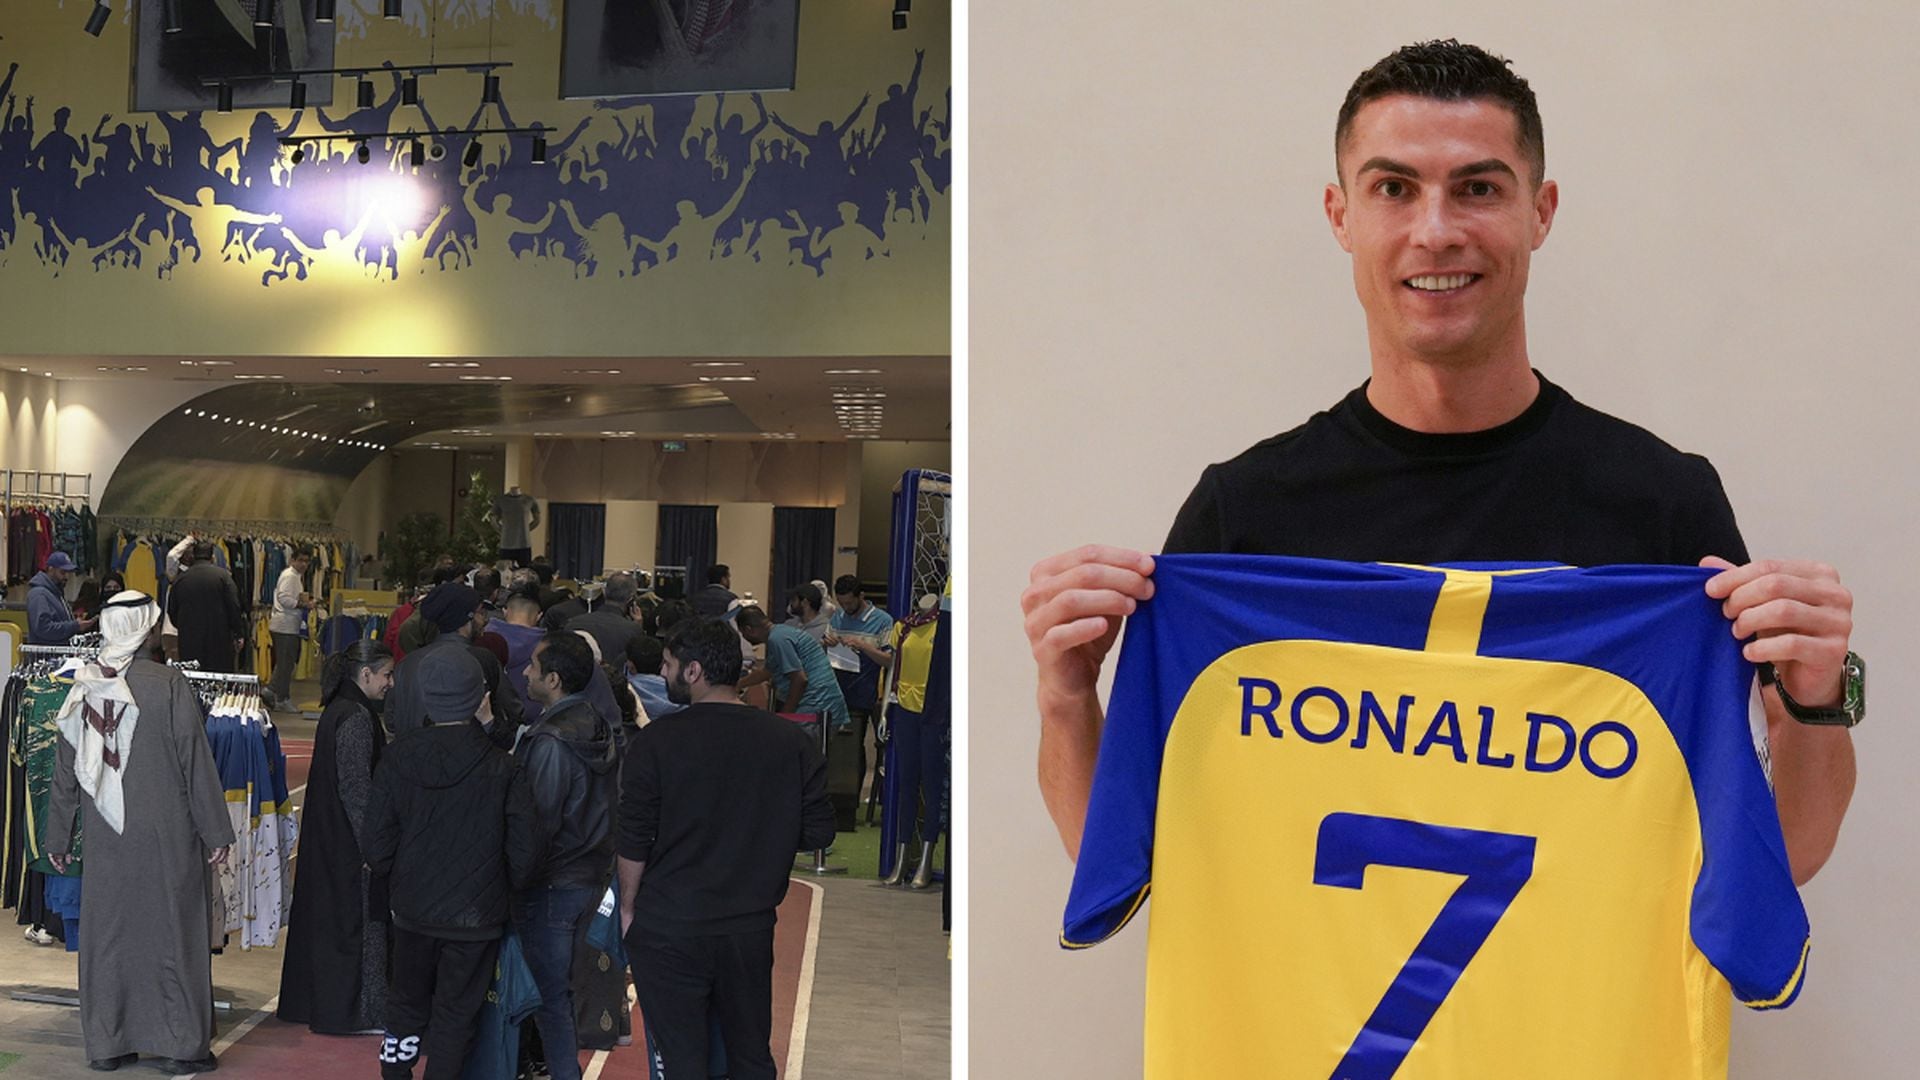 Camiseta de Cristiano Ronaldo en el Al Nassr ya es la más buscada en en  Arabia Saudita